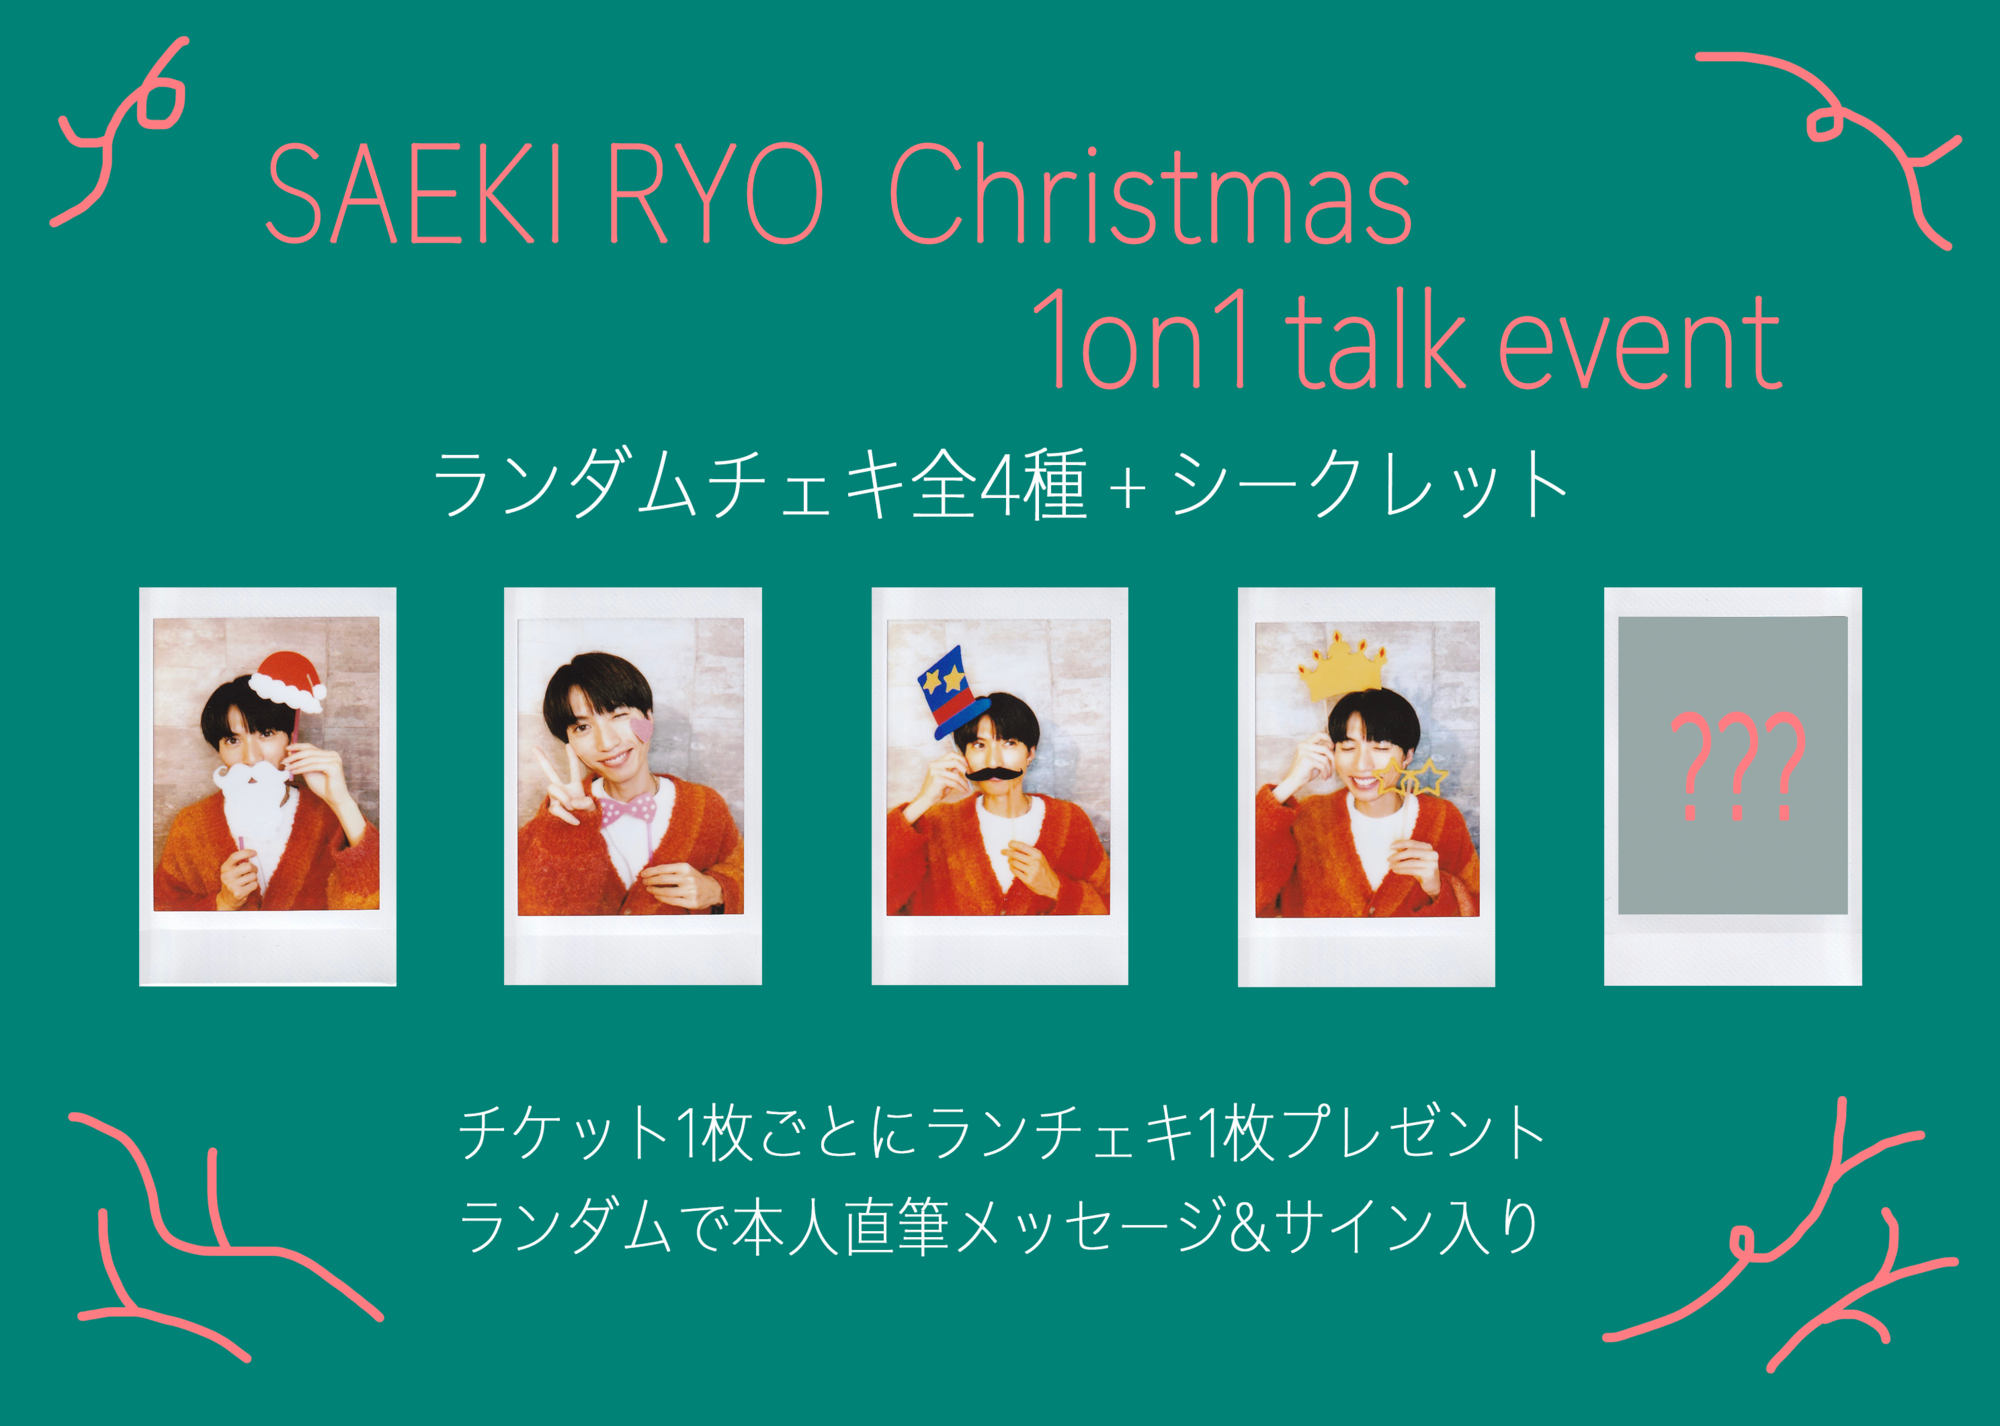 SAEKI RYO Christmas 1on1 talk event 【FC限定】 | 佐伯亮OFFICIAL SITE